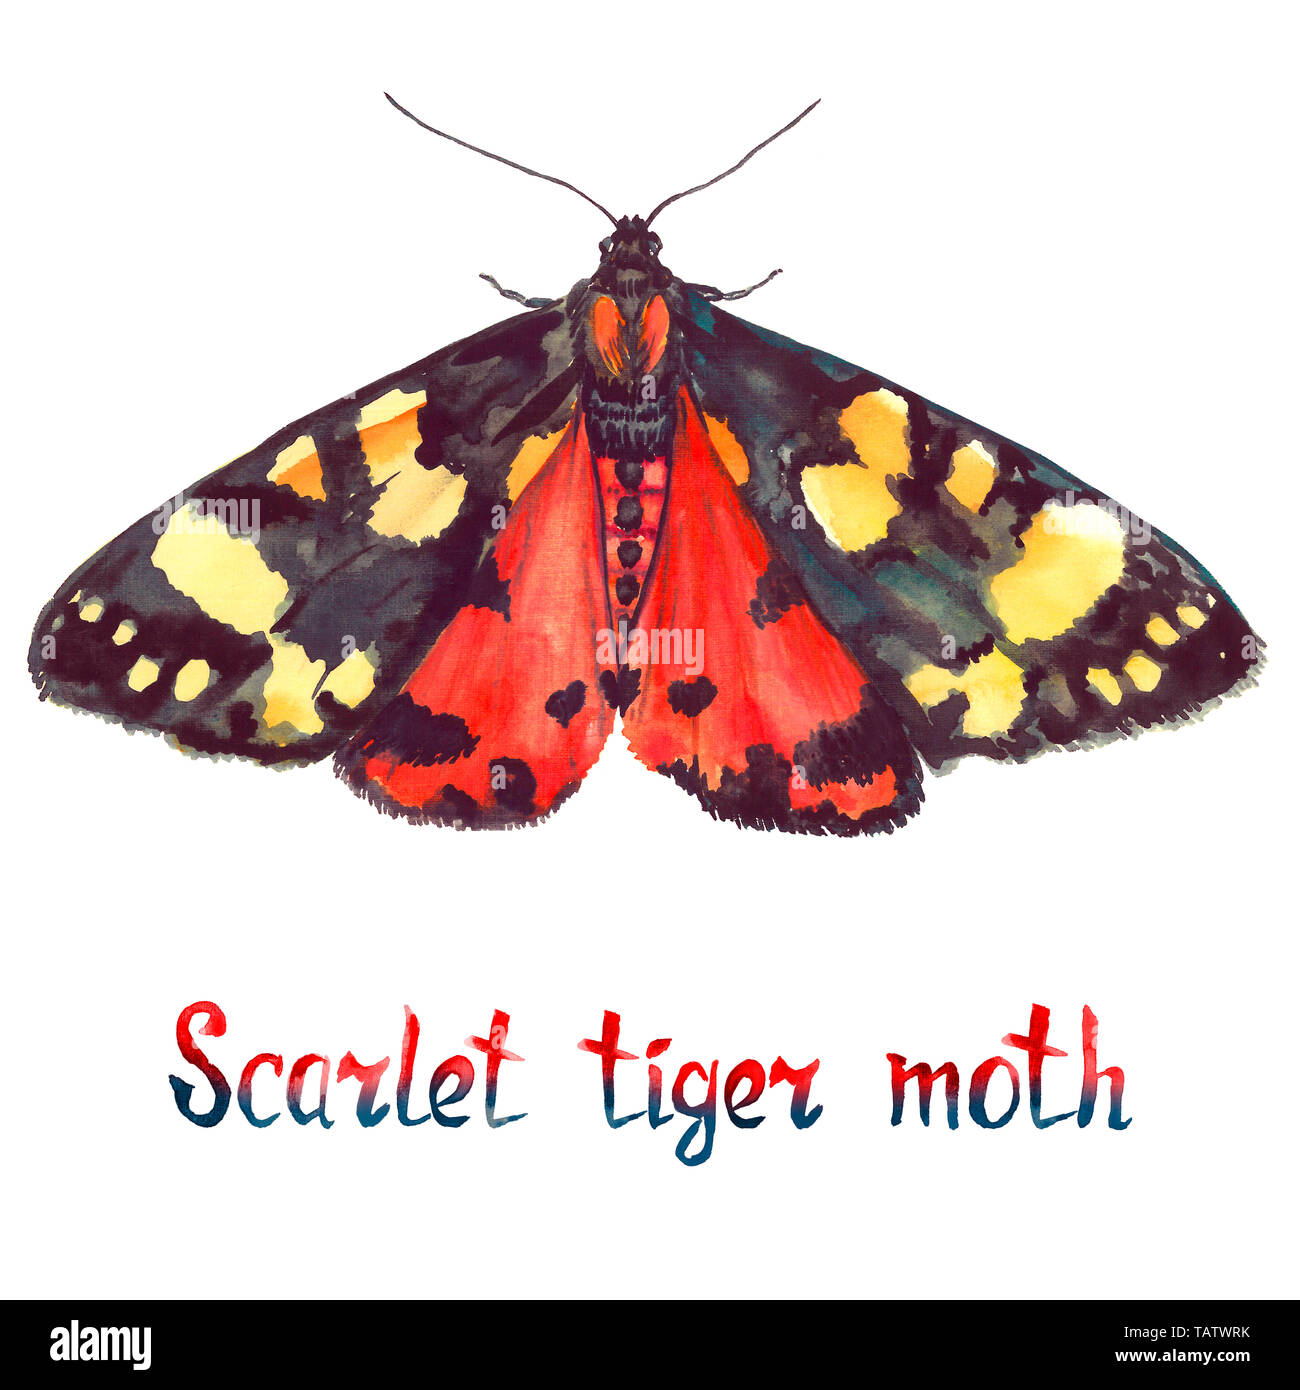 Scarlet tiger moth, dipinte a mano illustrazione ad acquerello con iscrizione manoscritta Foto Stock